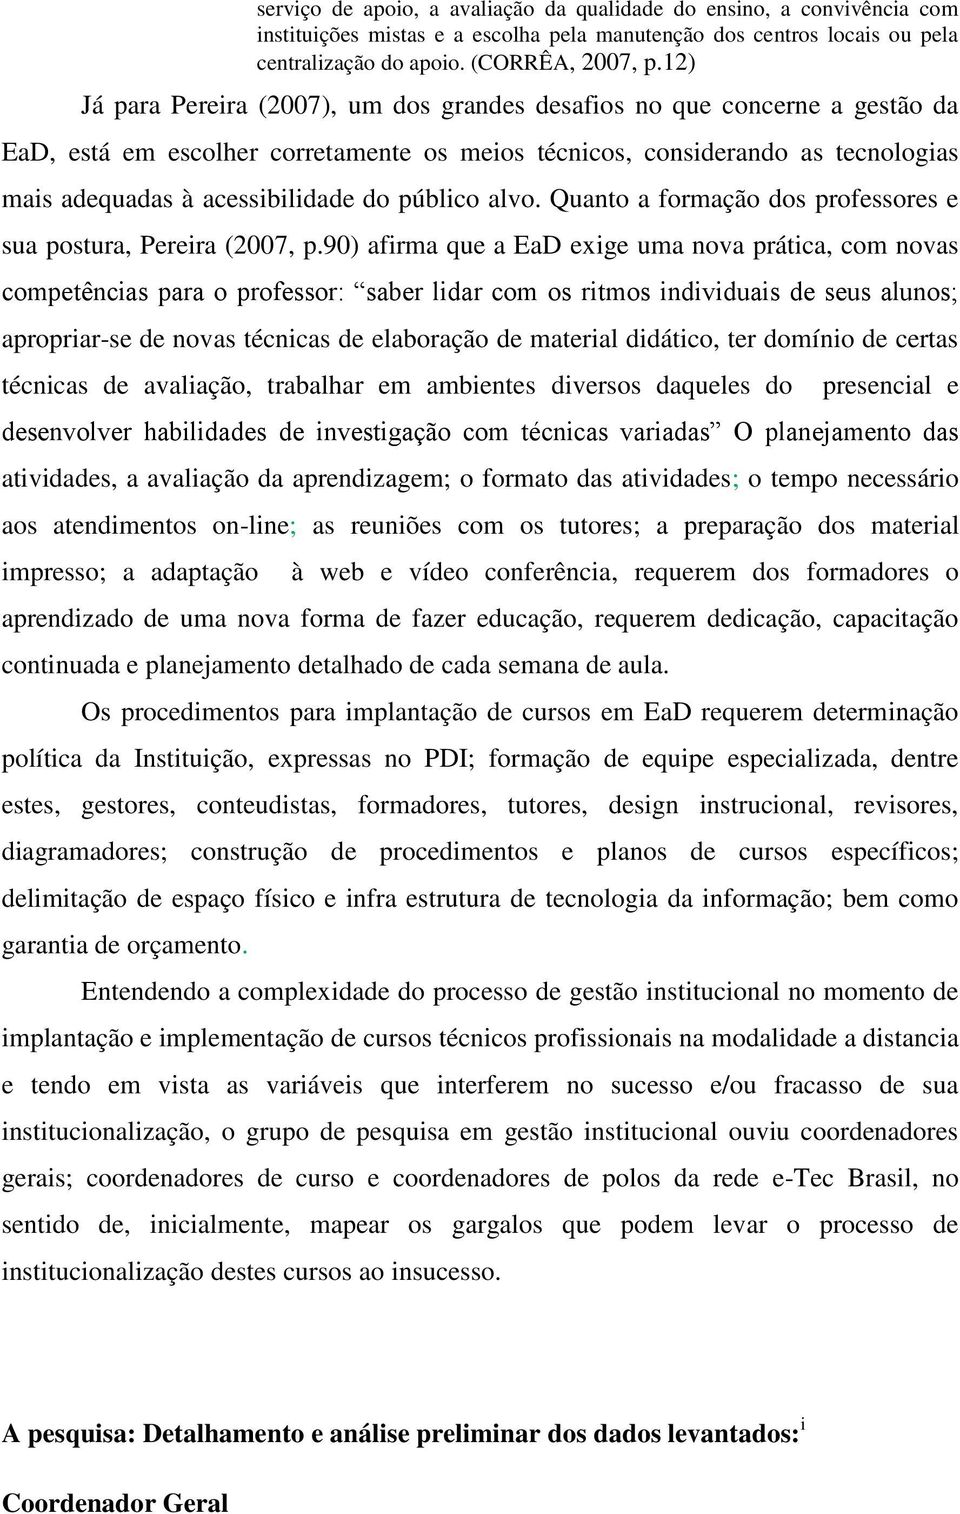 público alvo. Quanto a formação dos professores e sua postura, Pereira (2007, p.